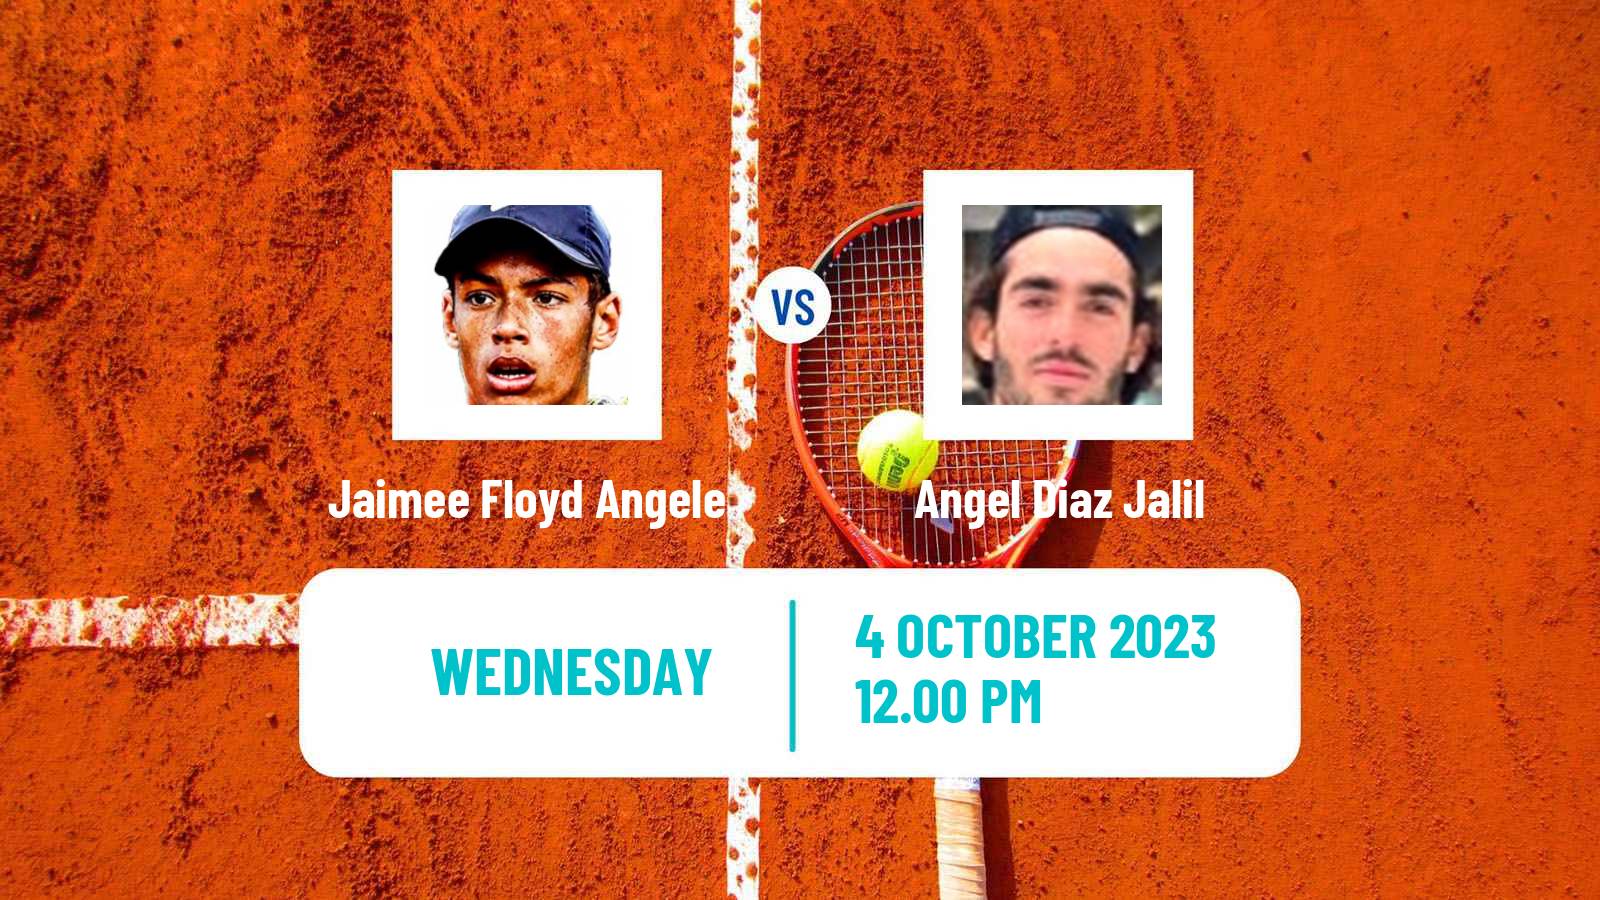 Tennis ITF M15 Ithaca Ny 2 Men Jaimee Floyd Angele - Angel Diaz Jalil